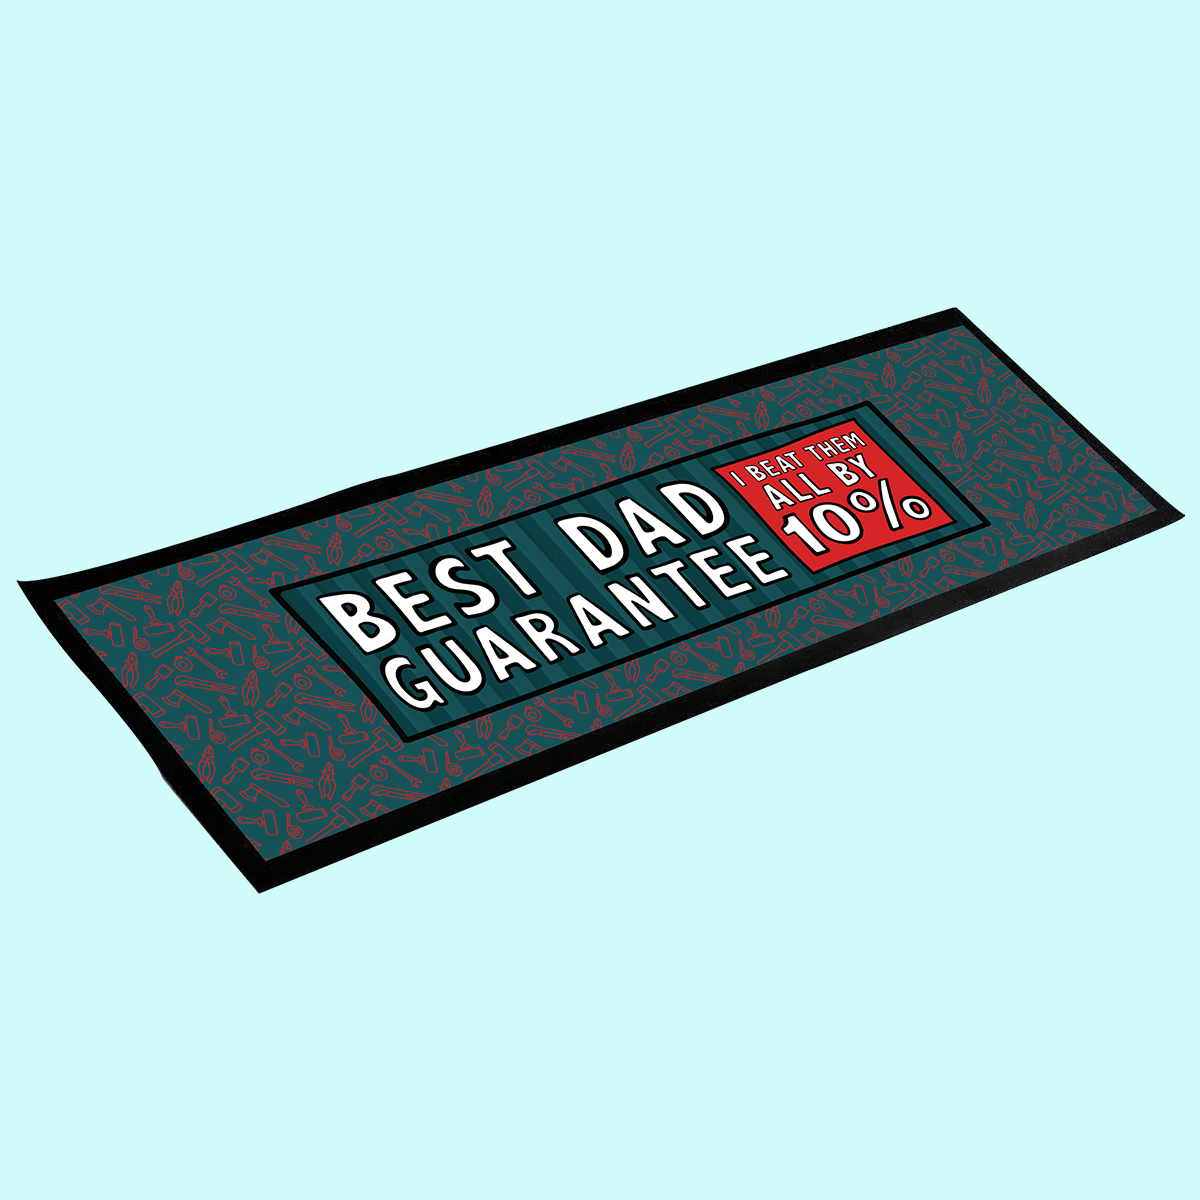 Best Dad Guarantee 🔨 - Large Bar Mat